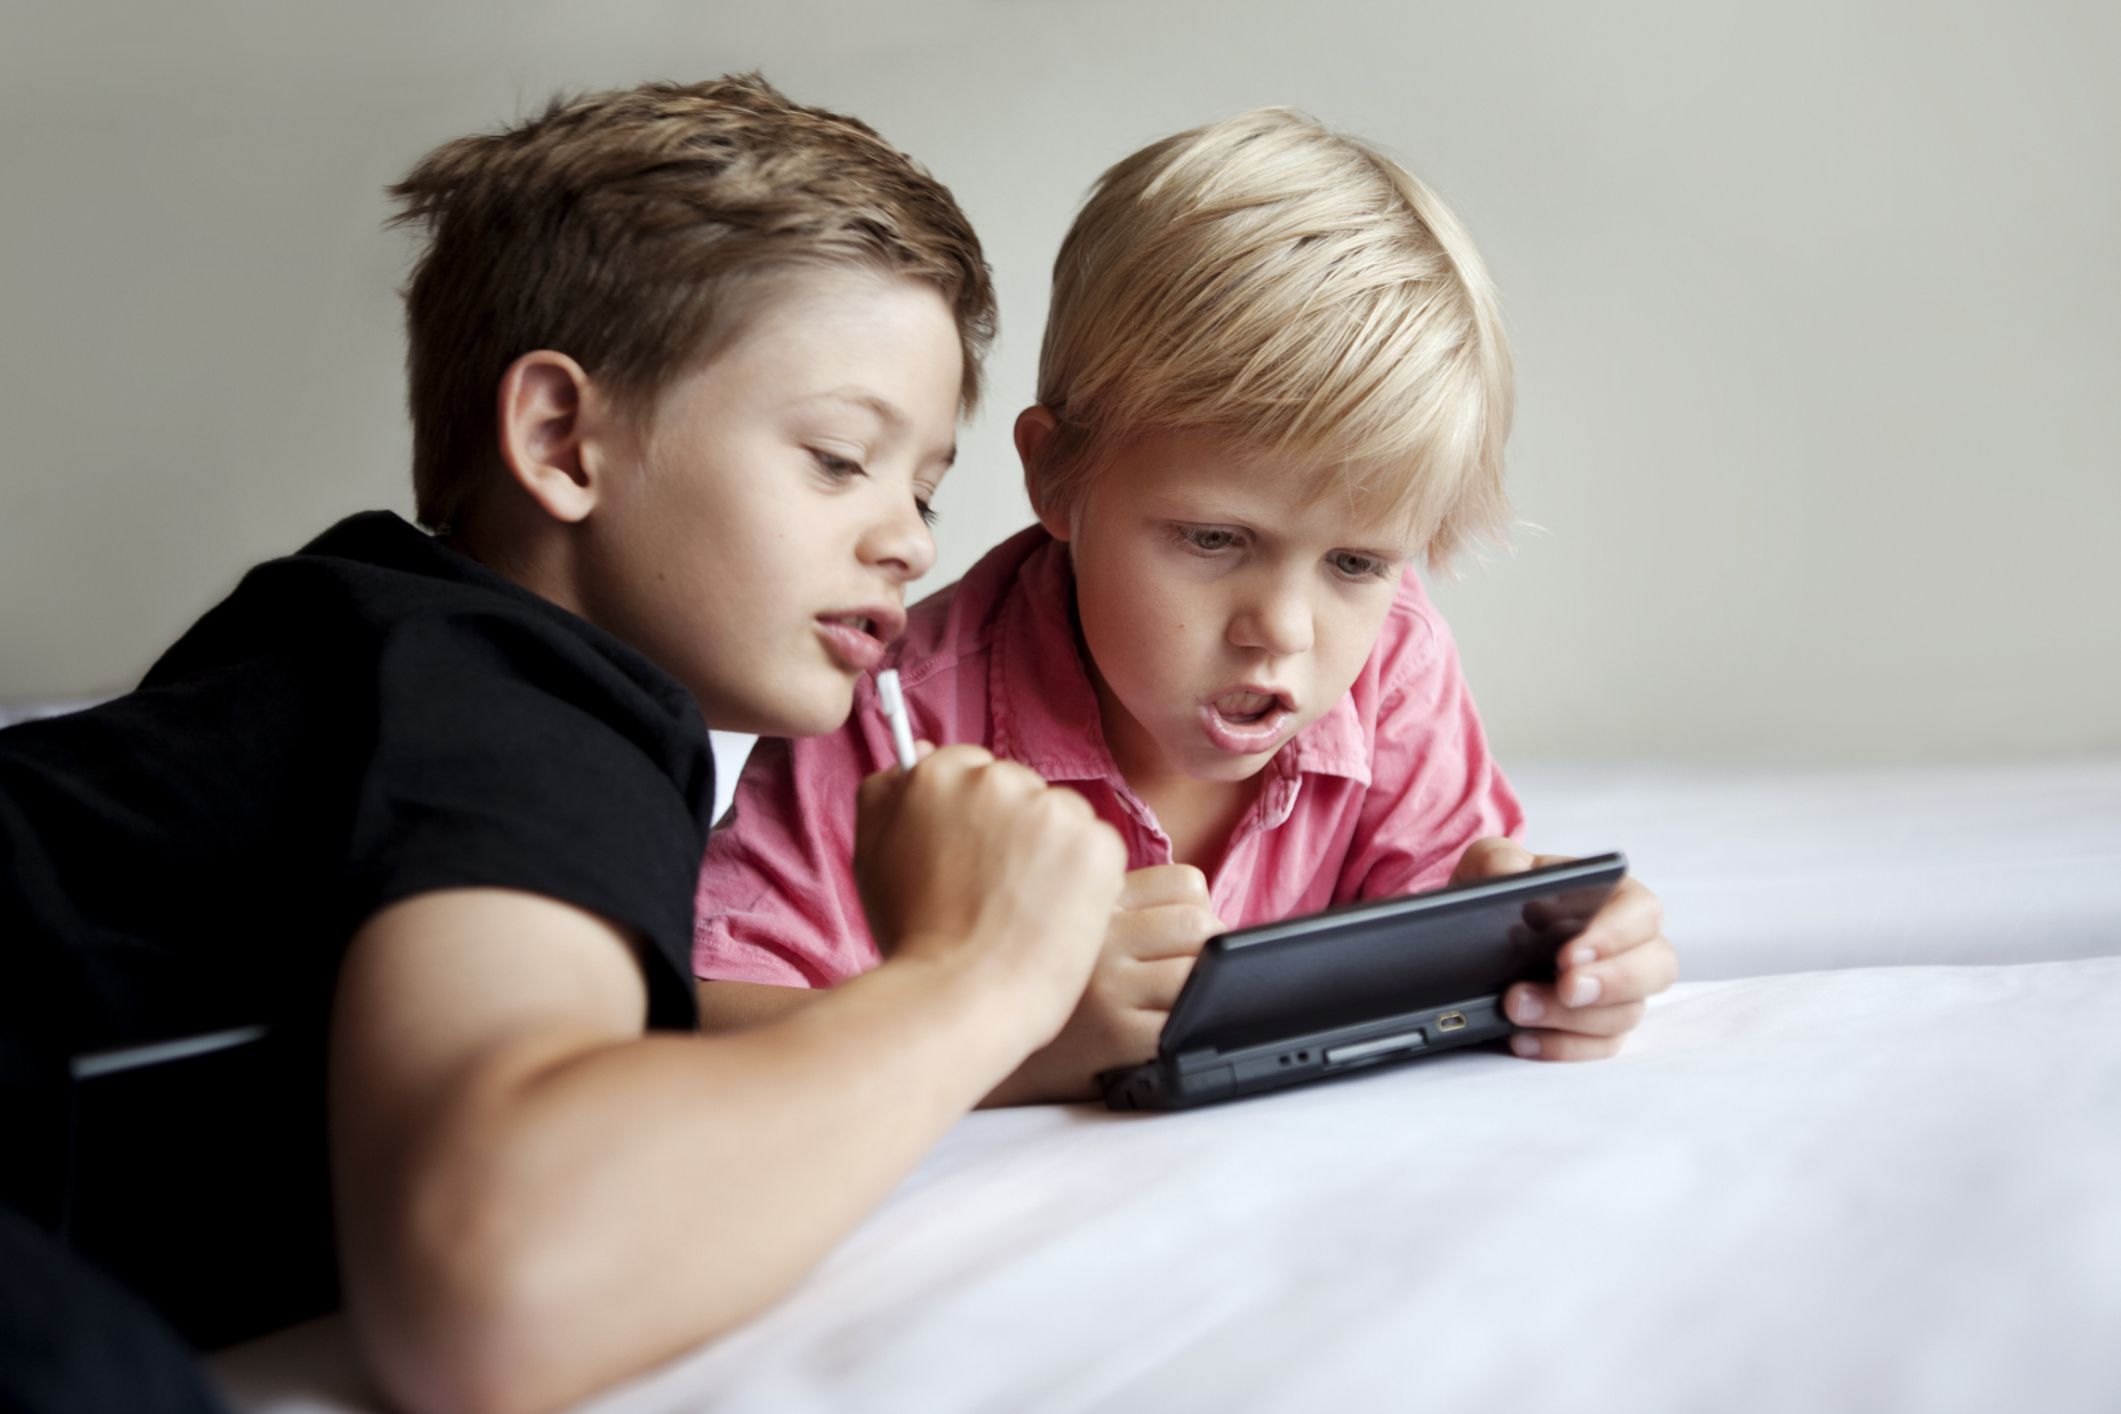 Mobile Games making Kids Violent